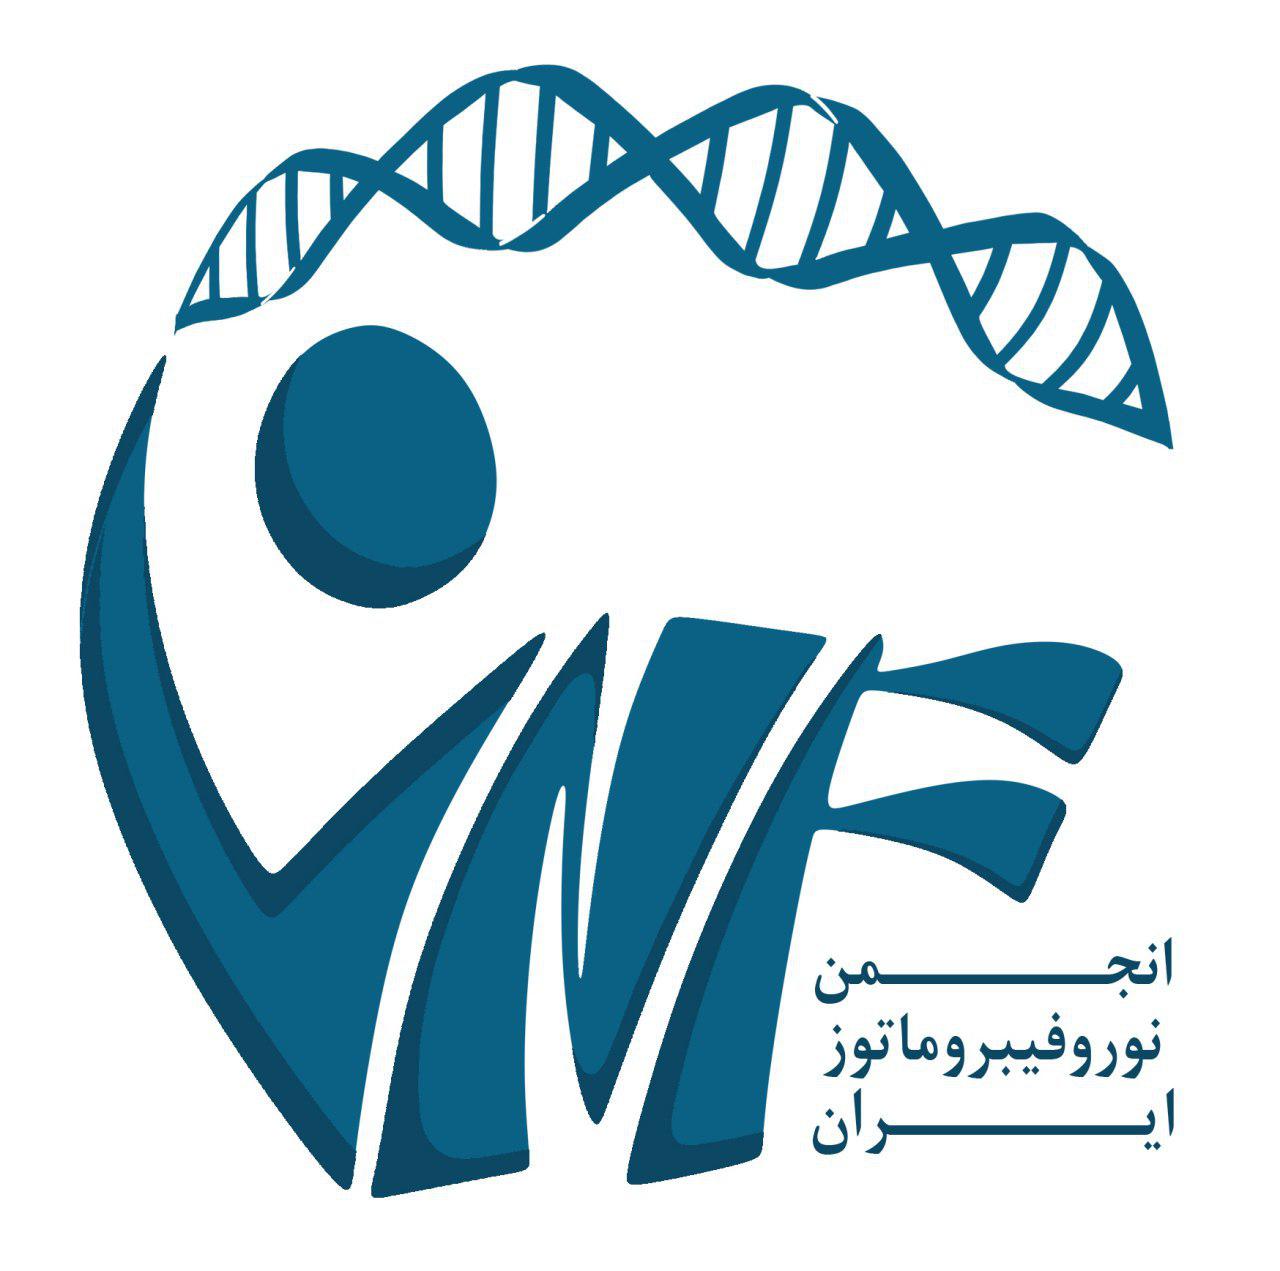 انجمن نوروفیبروماتوز ایران را حمایت کنید